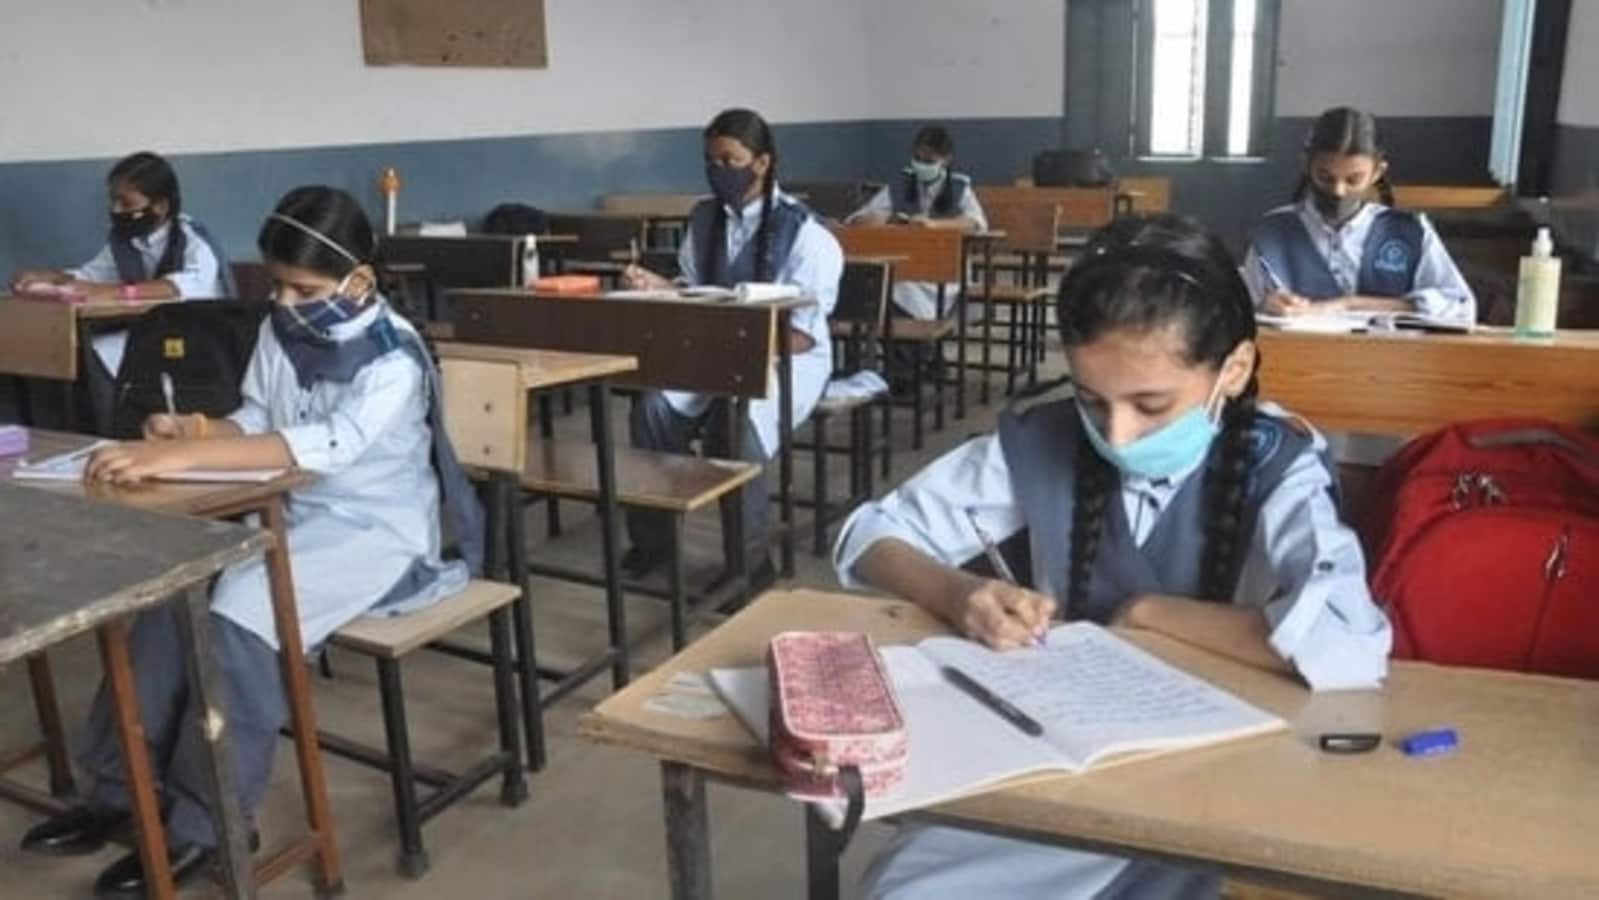 कक्षा 5, 8 के छात्रों को वार्षिक परीक्षा में असफल होने पर पदोन्नत नहीं किया जाएगा: दिल्ली सरकार